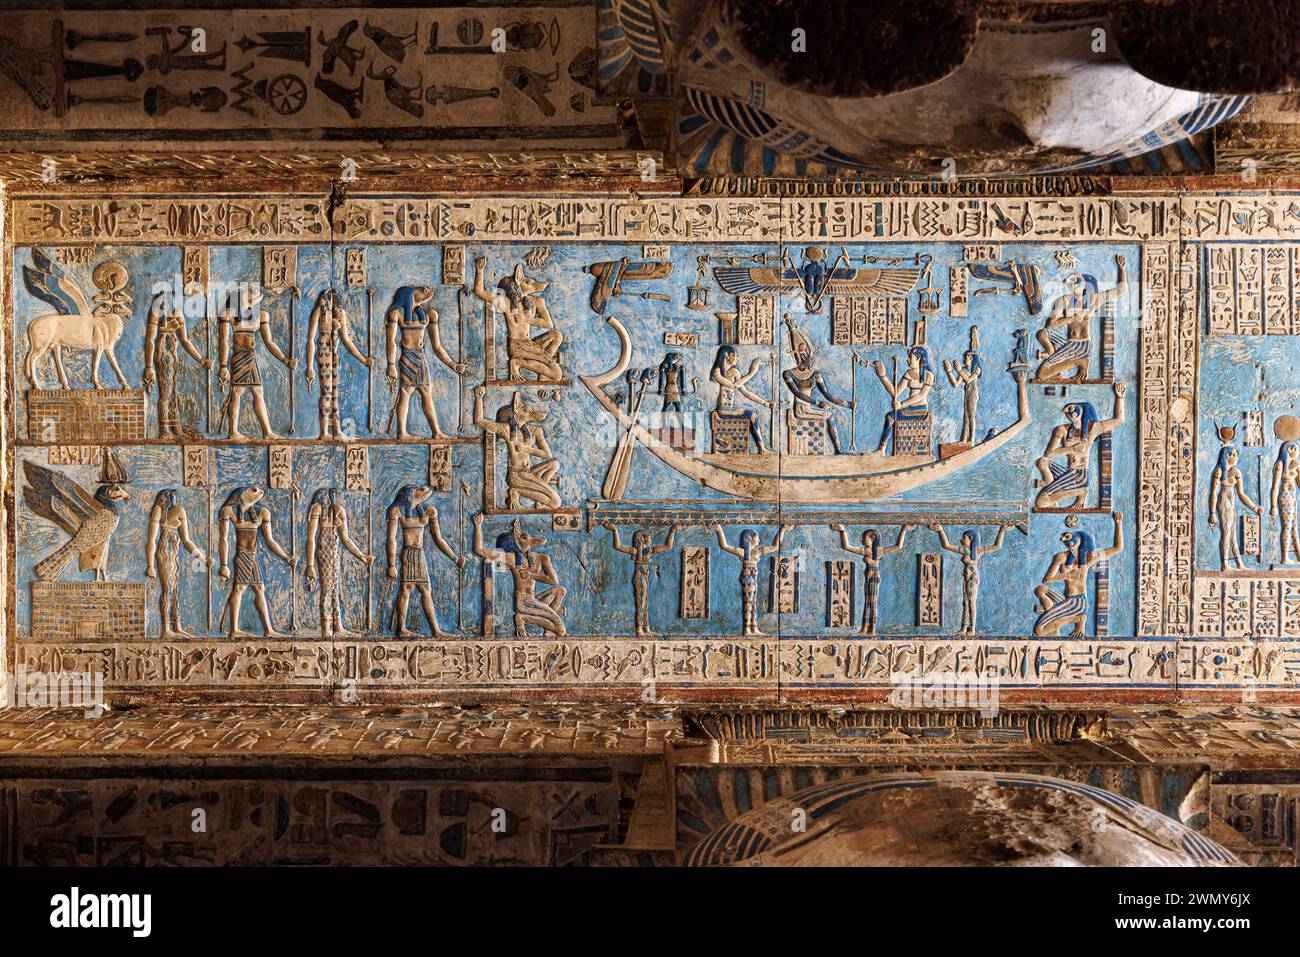 Ägypten, Qena, Dendera, pharaonische Tempel in Oberägypten aus ptolemäischer und römischer Zeit, von der UNESCO zum Weltkulturerbe erklärt, Hathor-Tempel, hypostilvolle Zimmerdecke Stockfoto